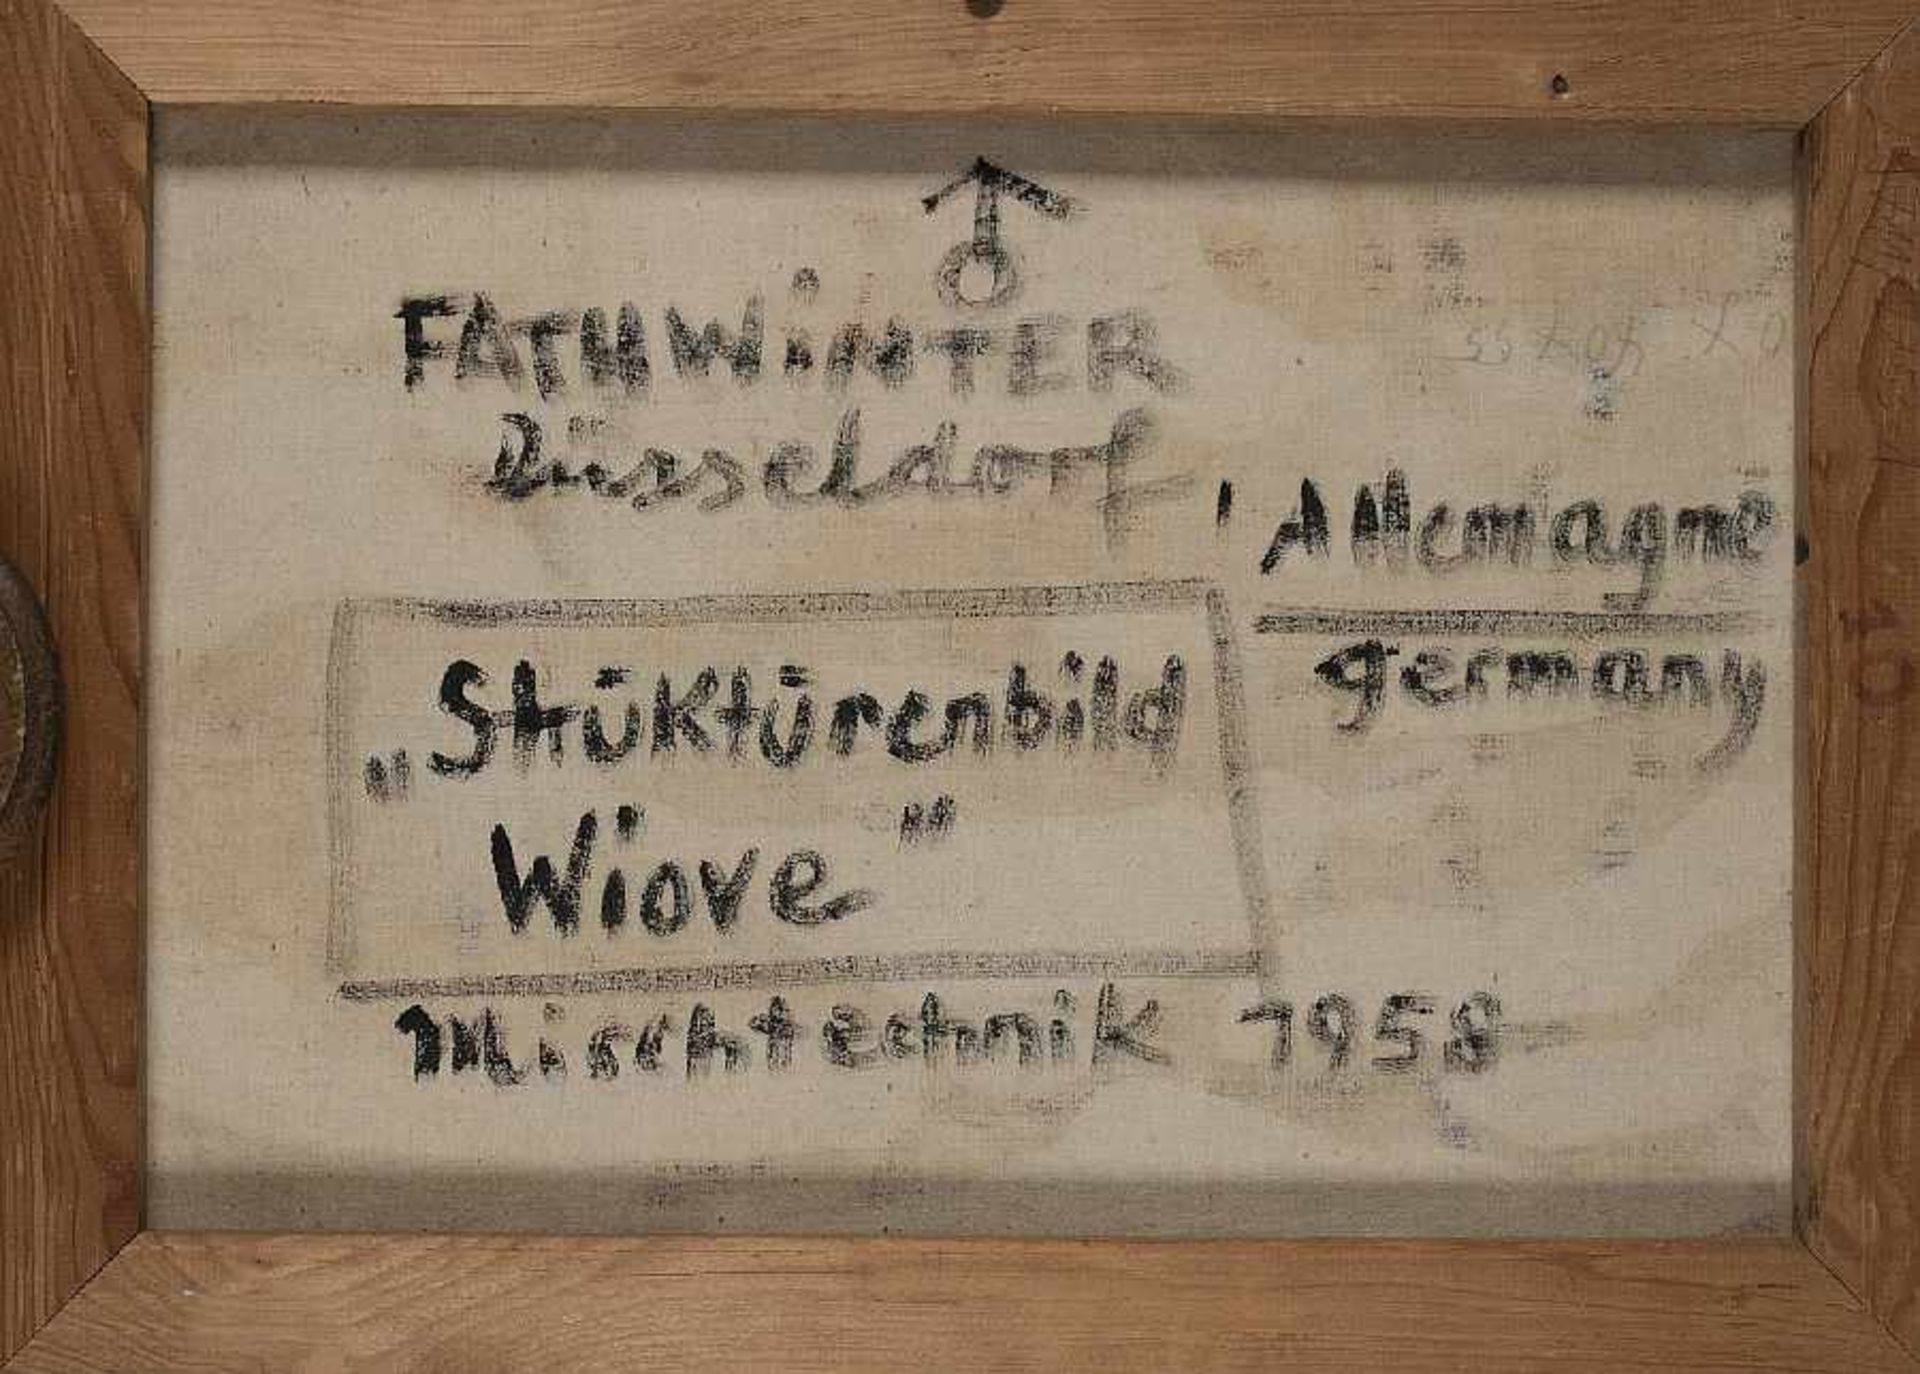 Fathwinter 1906 - 1974 Strukturbild Wiove Ölmischtechnik auf Lwd; H 40,5 cm, B 55 cm; signiert und - Bild 2 aus 2